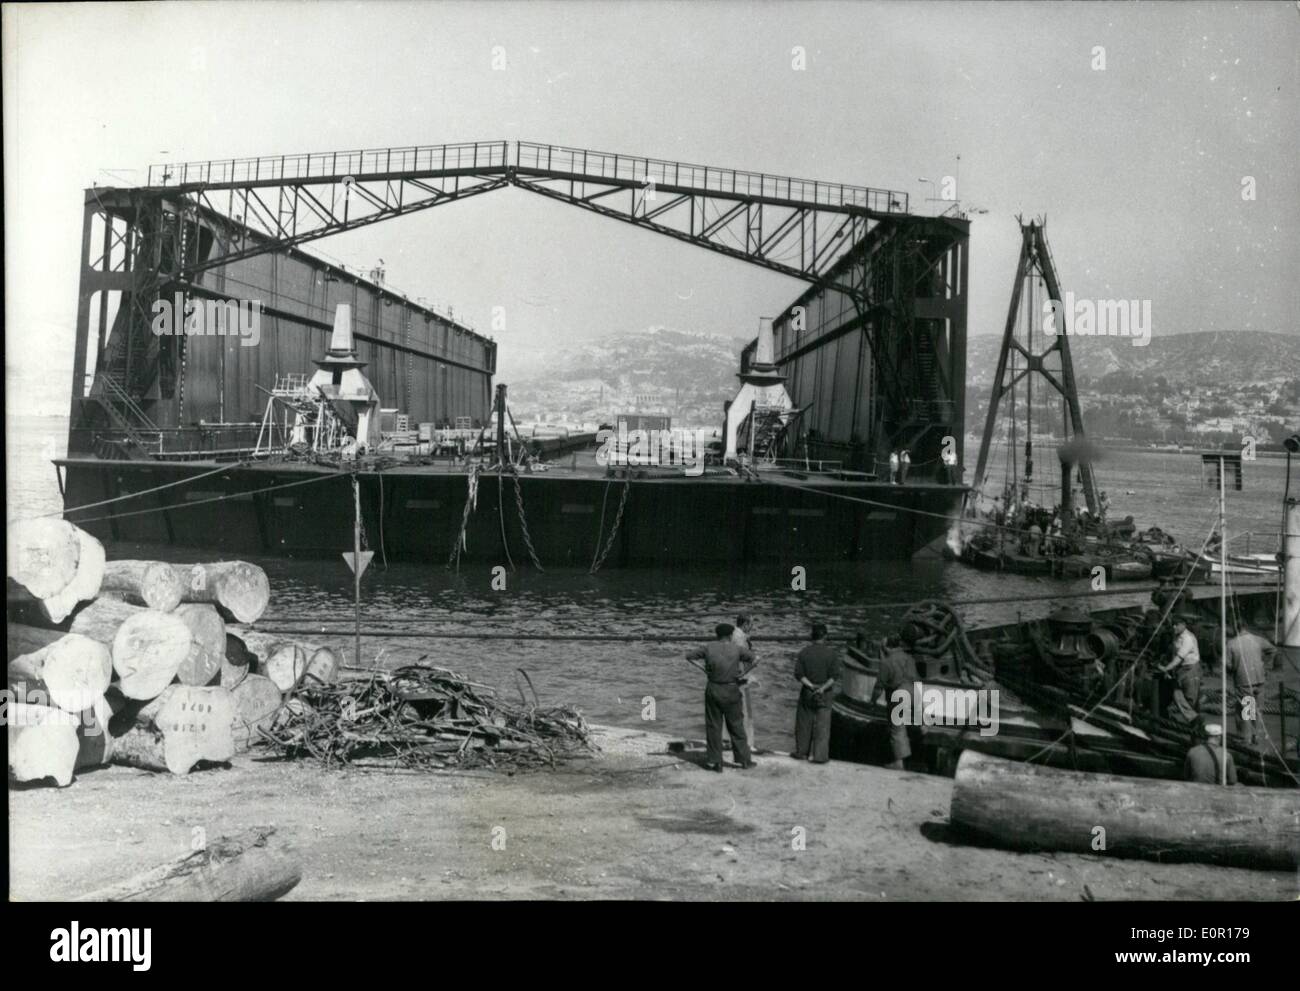 Sett. 09, 1957 - 20.000 ton bacino galleggiante arriva a Marsiglia: costruito a Redenburg (Germania) cantiere a 20.000 ton bacino galleggiante è arrivato a Marsiglia dopo un viaggio di più di 14 giorni. Il pontile galleggiante a Marsiglia. Foto Stock